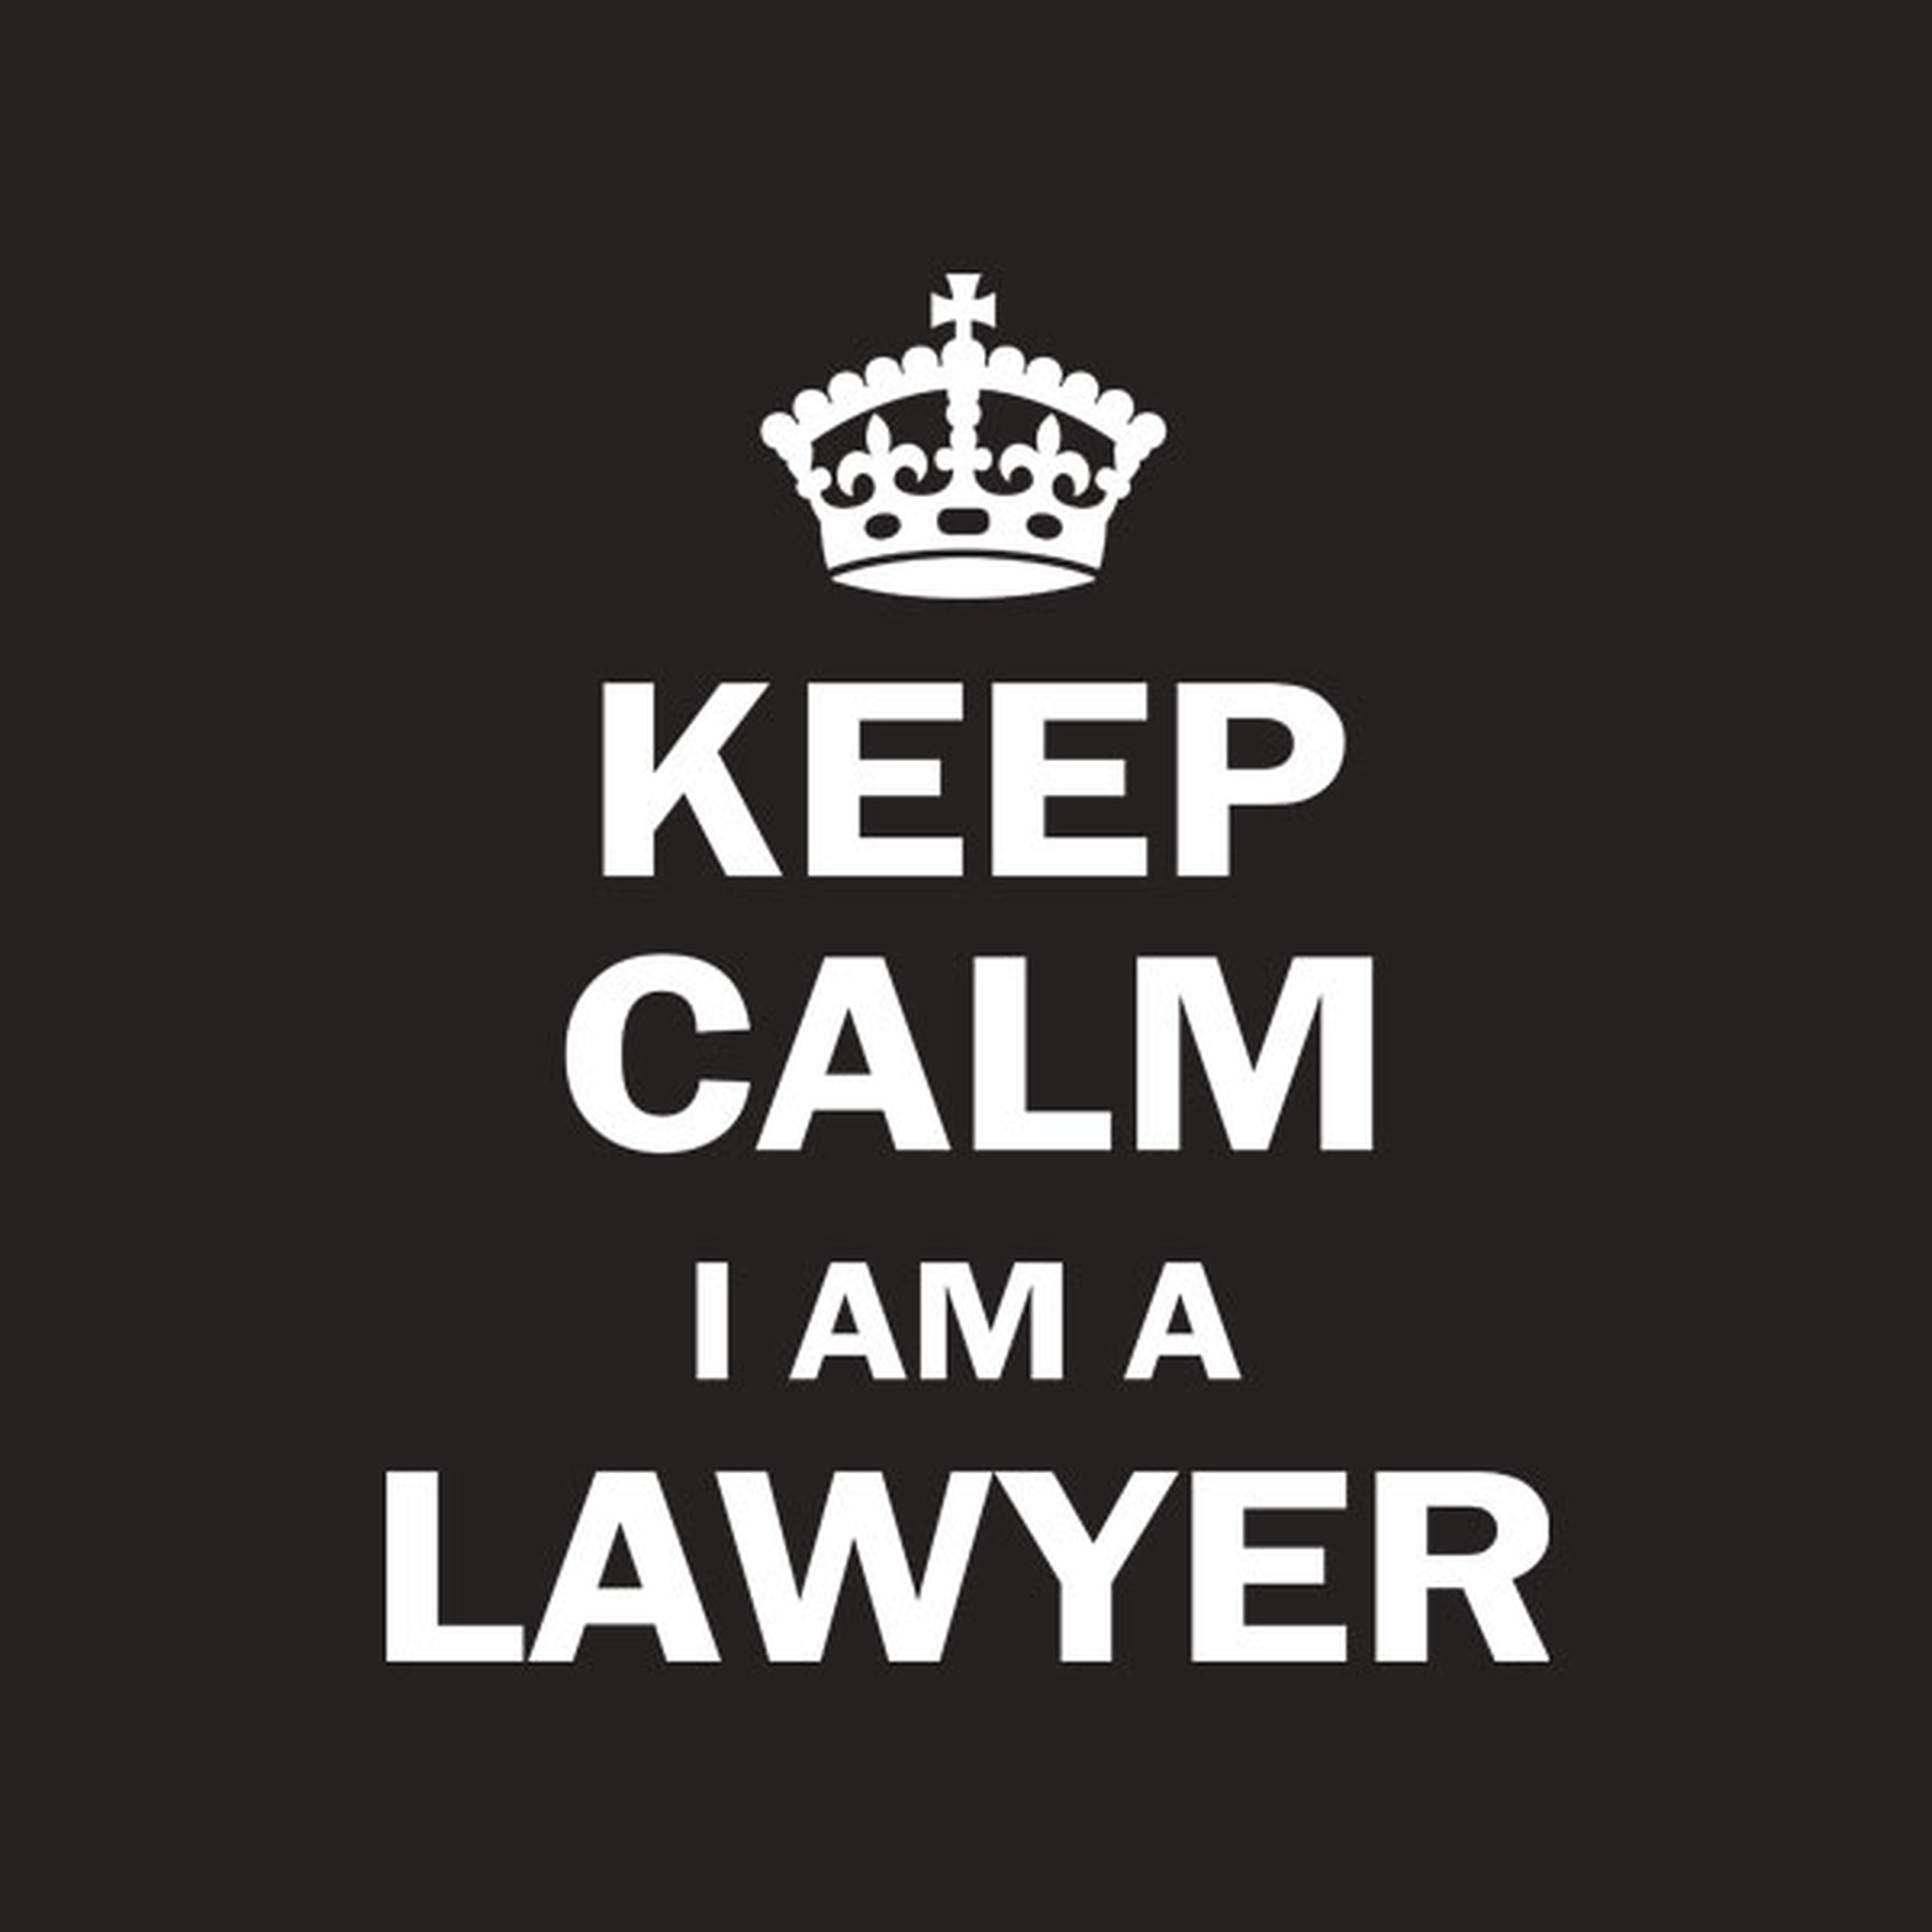 Keep calm I am a lawyer - T-shirt